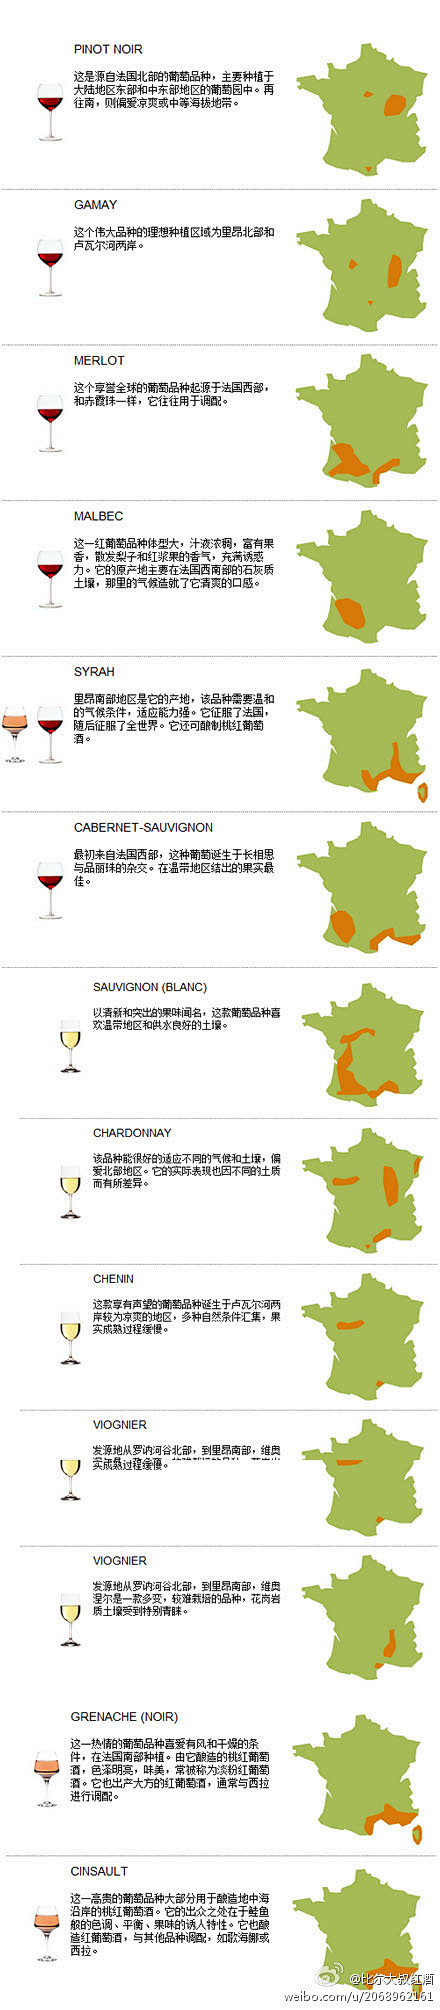 法国葡萄酒品种地图